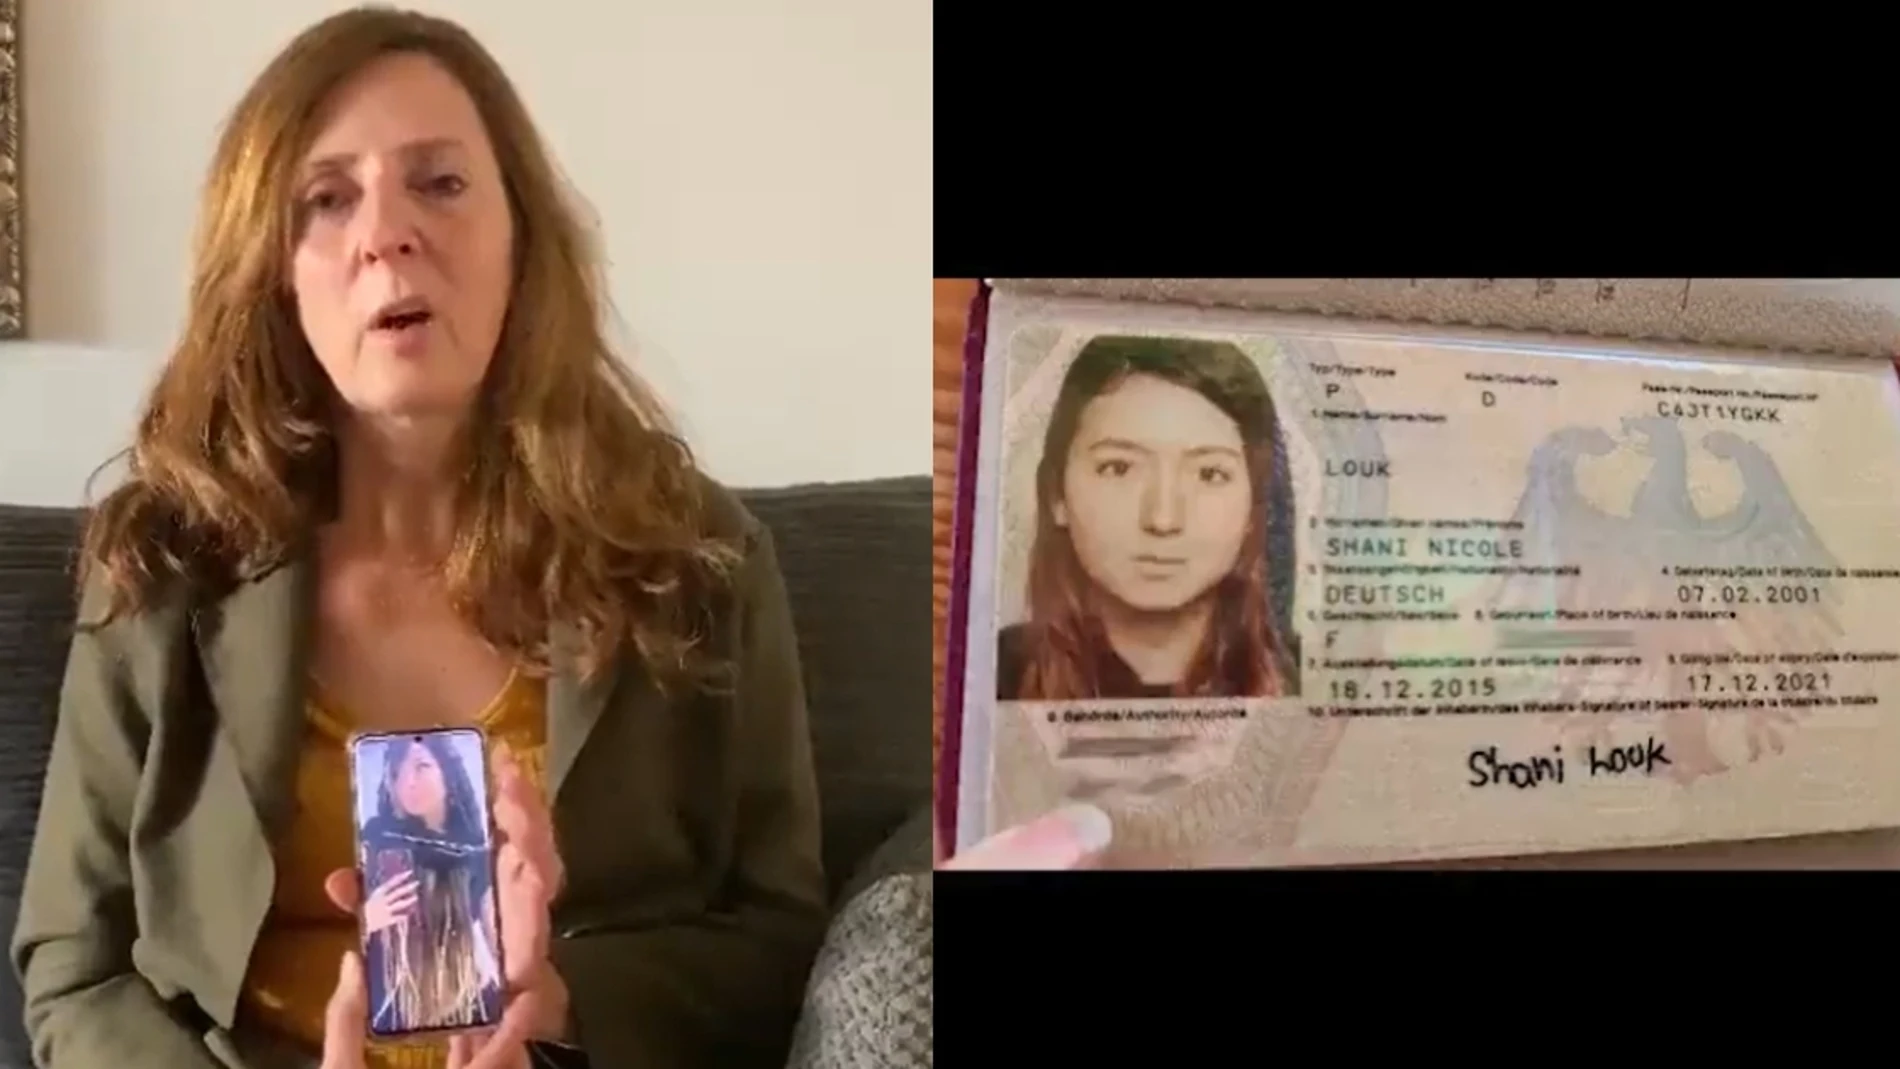 Madre de Shani Louk y el documento de identidad de su hija 